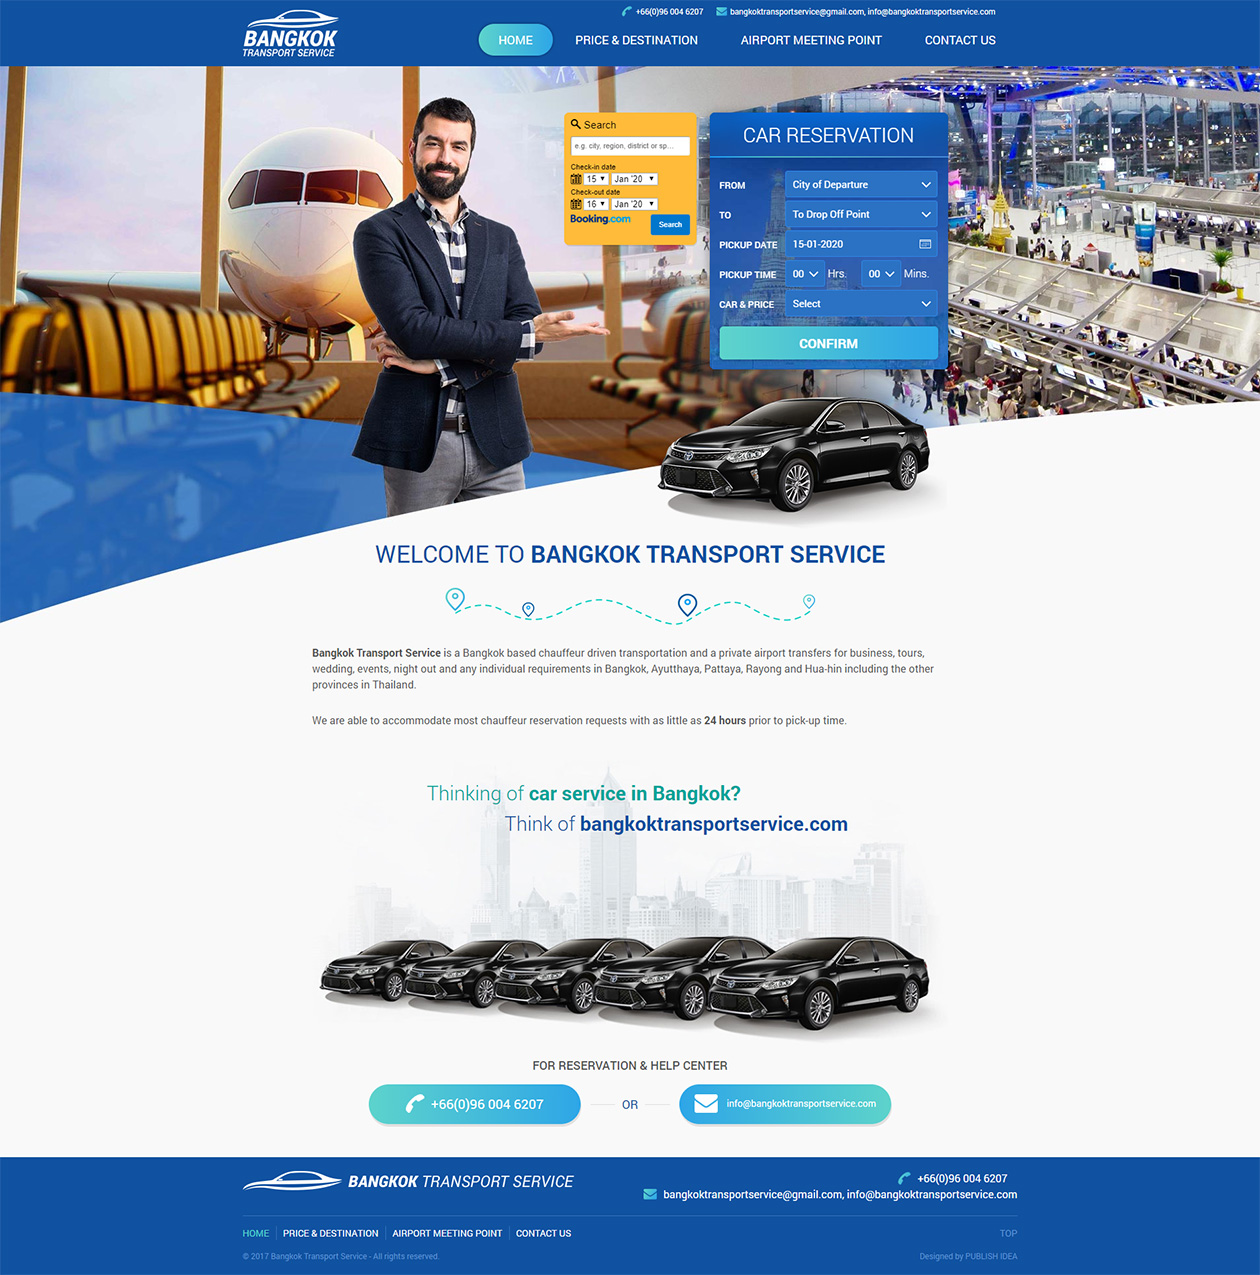 รับทำว็บไซต์ ออกแบบเว็บไซต์ บริการรถเช่าจากสนามบิน พร้อมระบบการจองรถและการชำระเงินออนไลน์ผ่าน PayPal